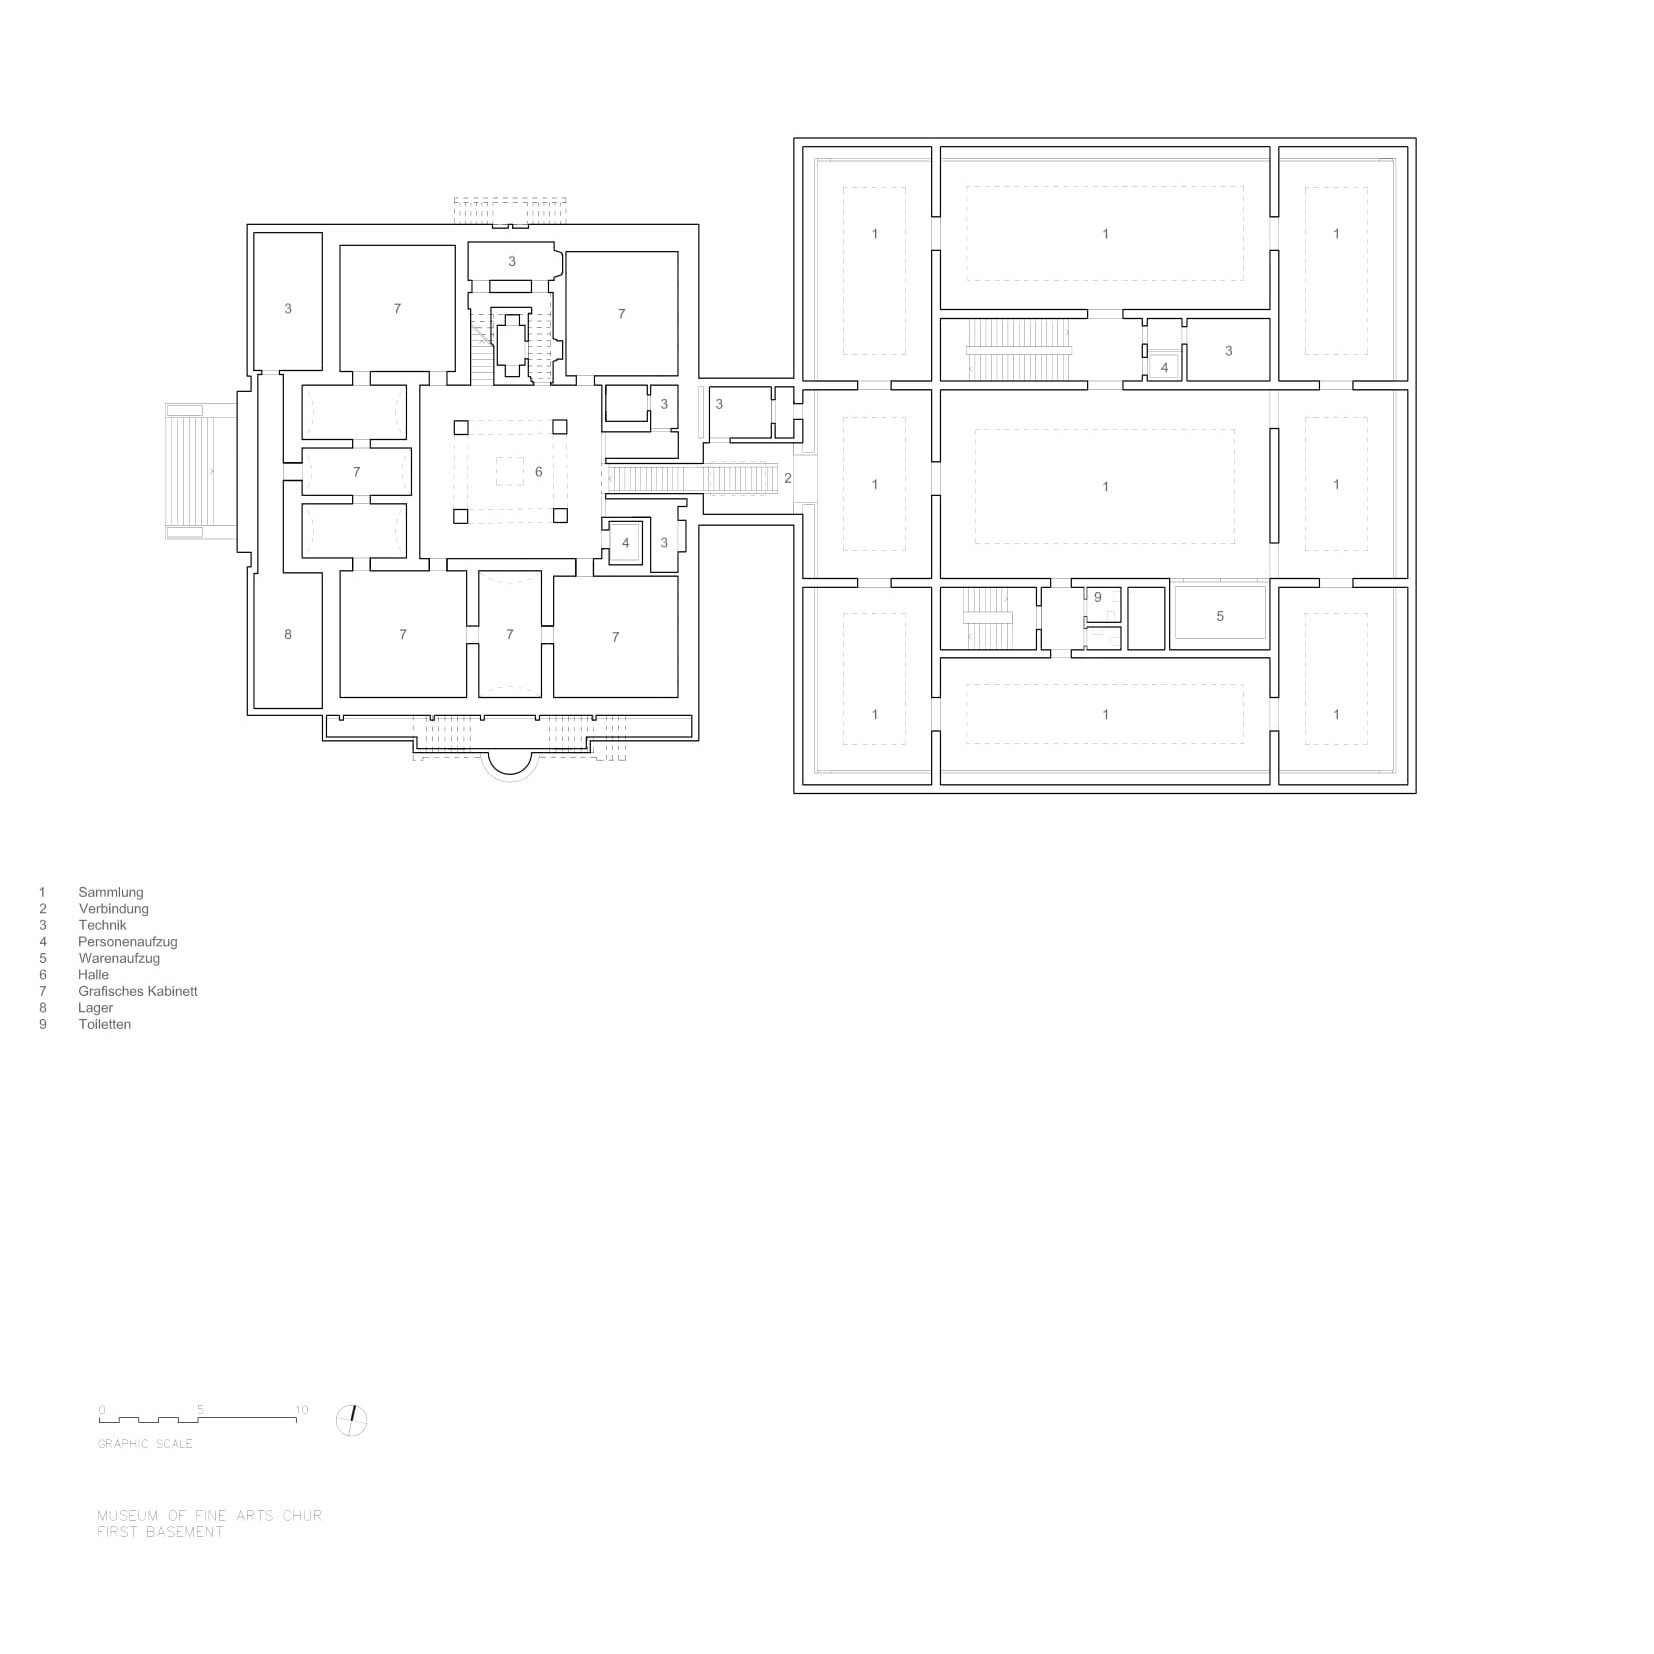 The first basement floor plan